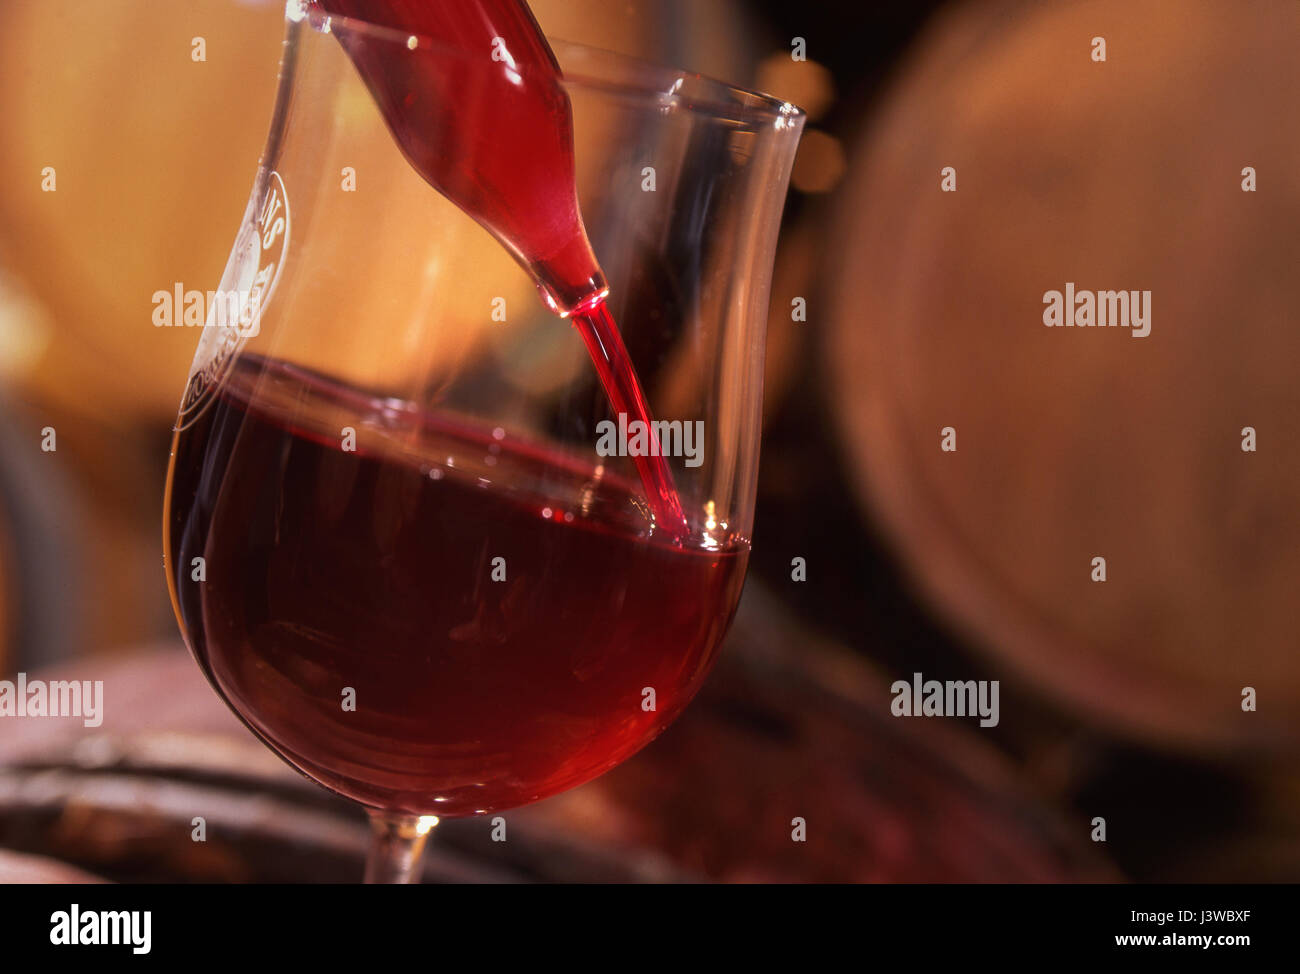 Cave dégustation de vin pipetage verre dégustation avec vin rouge Pinot Noir, tiré du fût de cave pour dégustation et évaluation, Bourgogne Côte d'Or France Banque D'Images